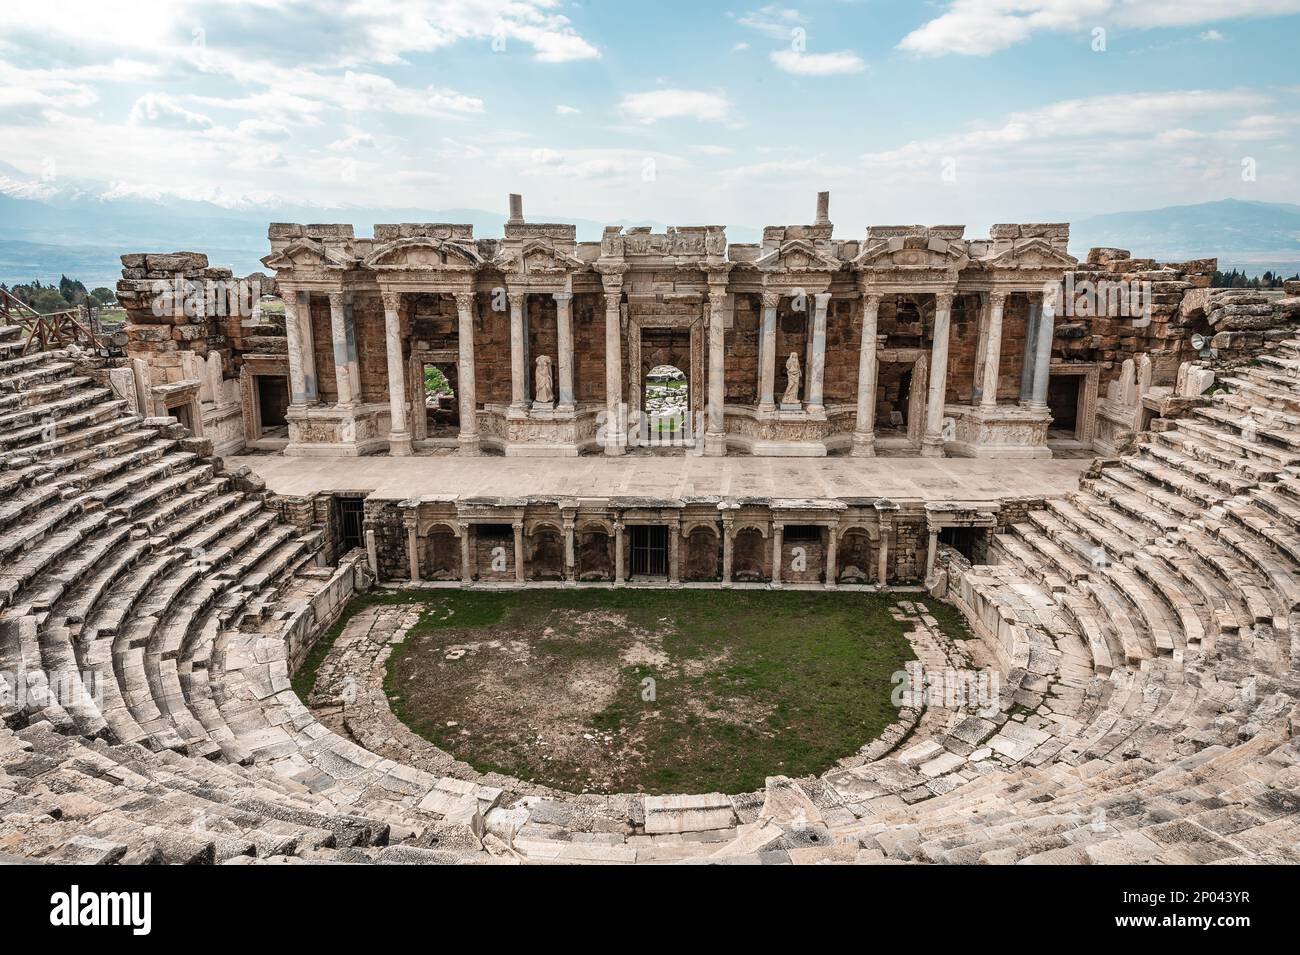 Ancient Stone Roman Amphitheater in Pamukkale Turkey Stock Photo